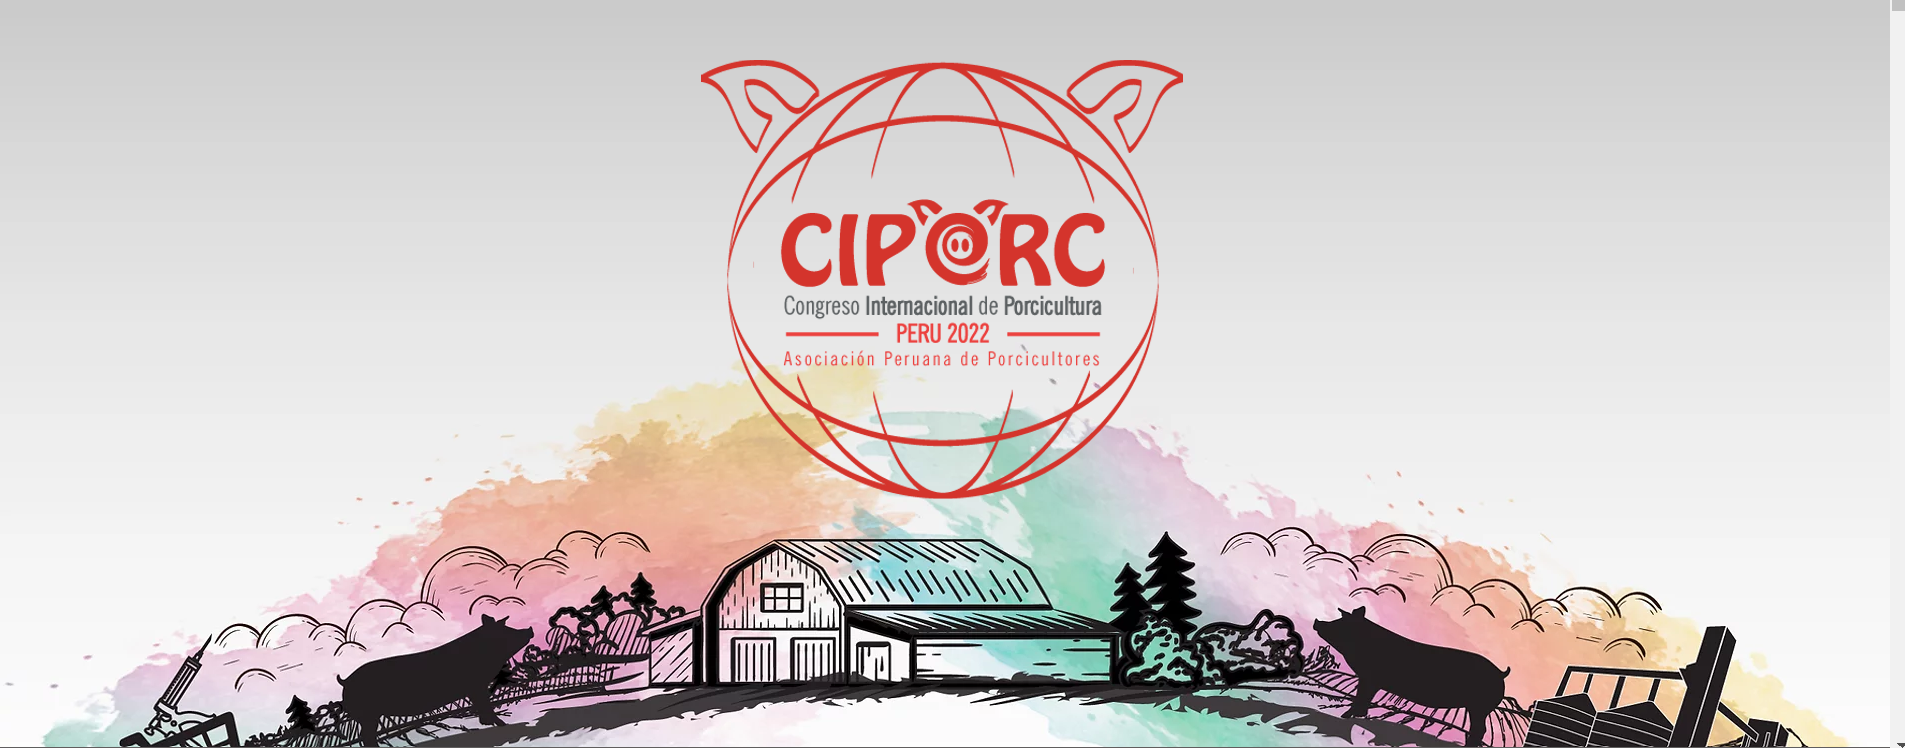 Participación de Encipharm Perú en el Congreso Internacional de Porcicultura CIPORC Perú 2022.